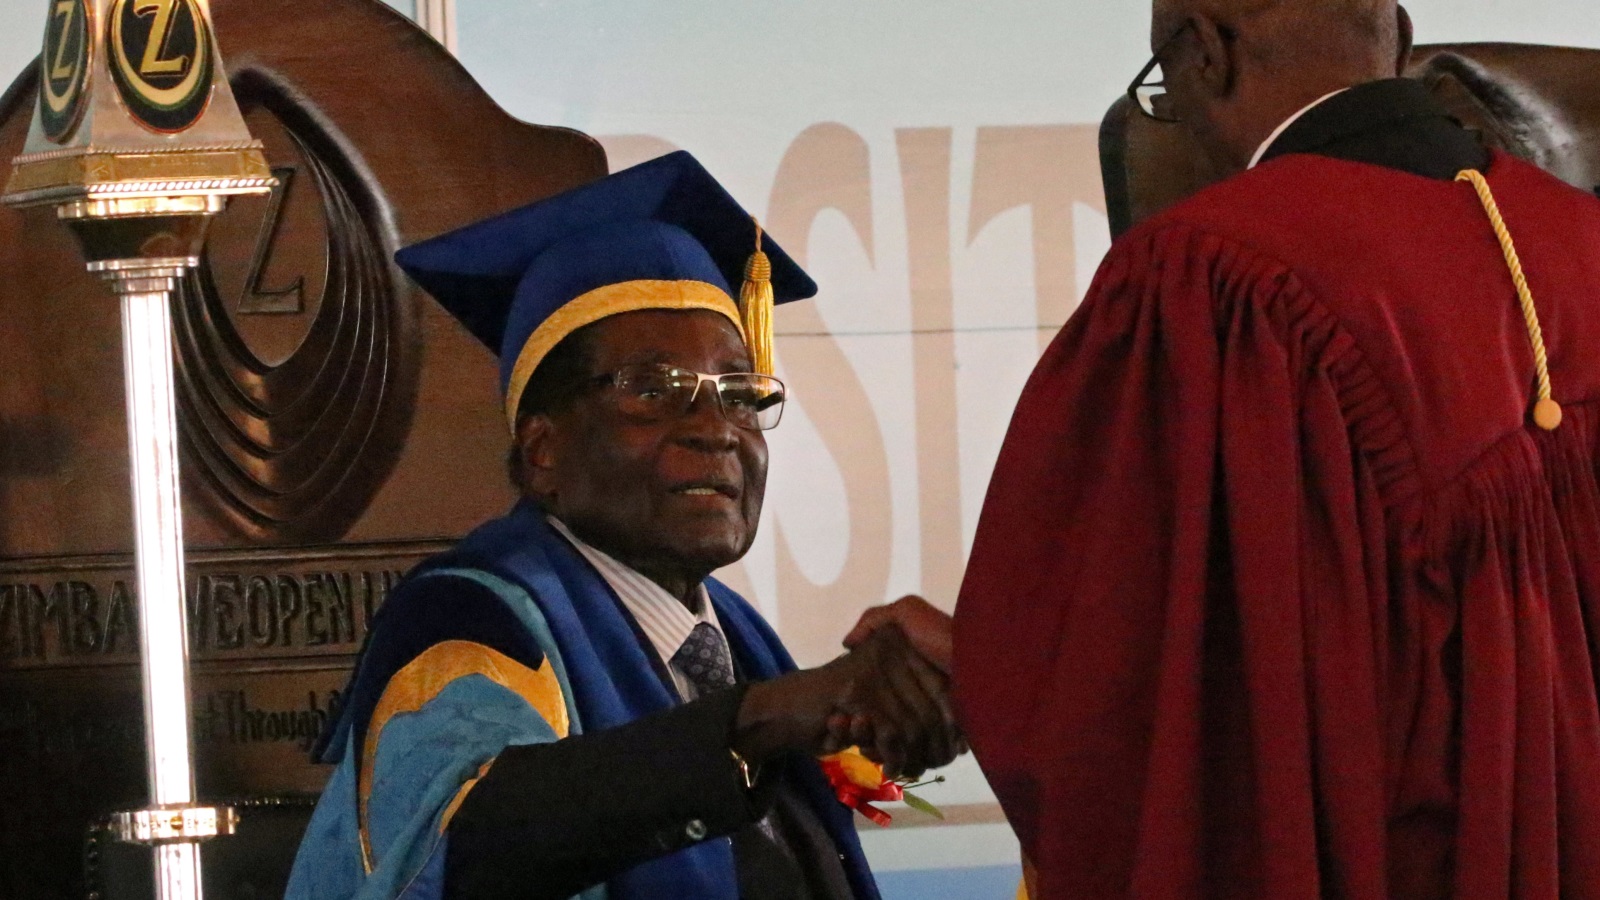 موغابي حضر حفل تخريج في جامعة هراري رغم وضعه قيد الإقامة الجبرية (رويترز)